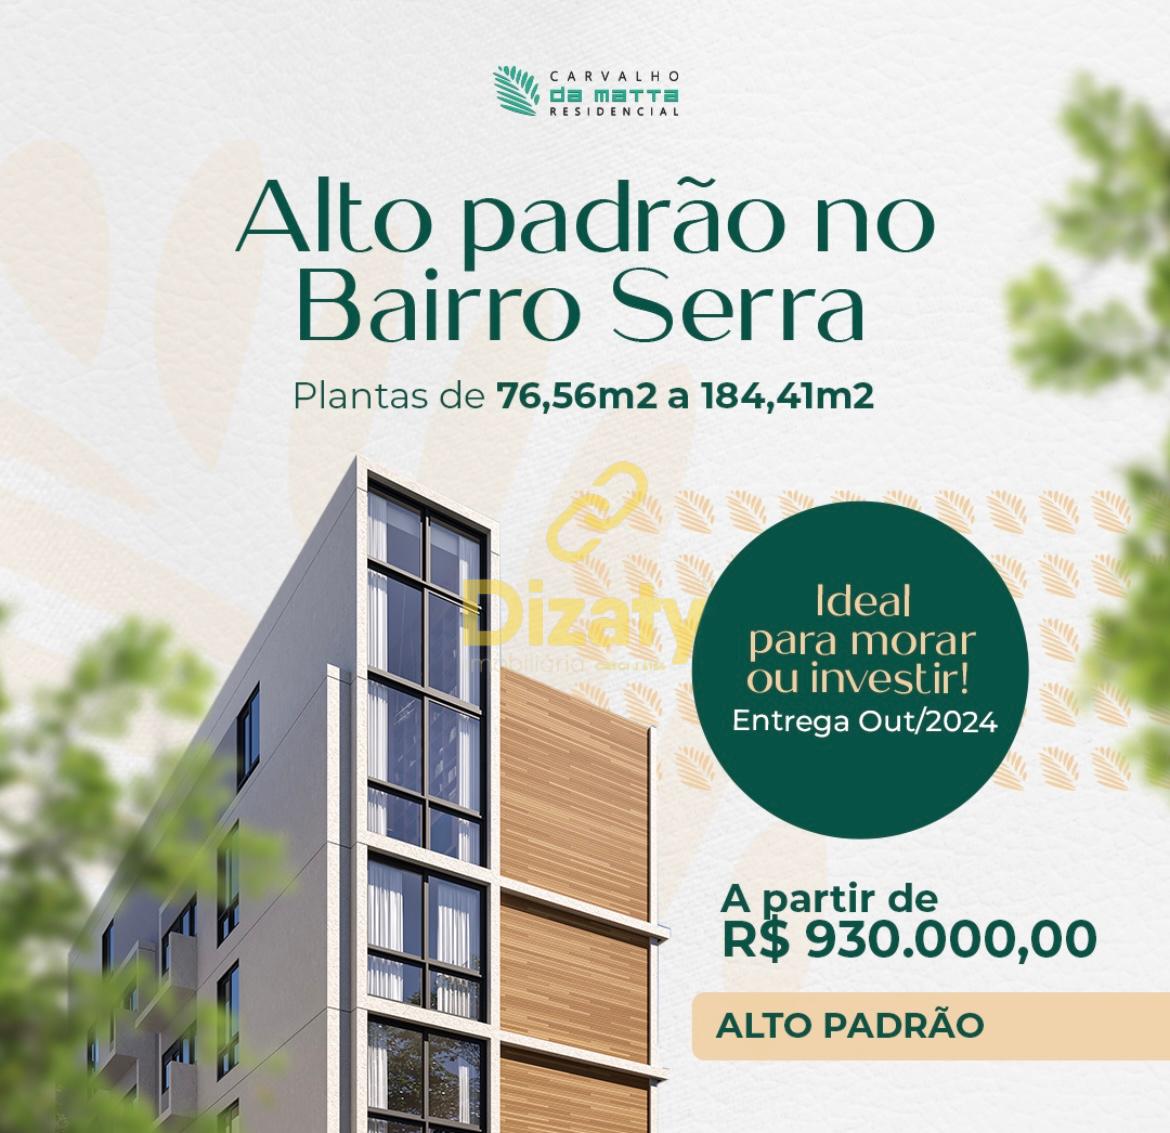 Apartamento  venda, RESIDENCIAL CARVALHO DA MATA, SETE LAGOAS - MG